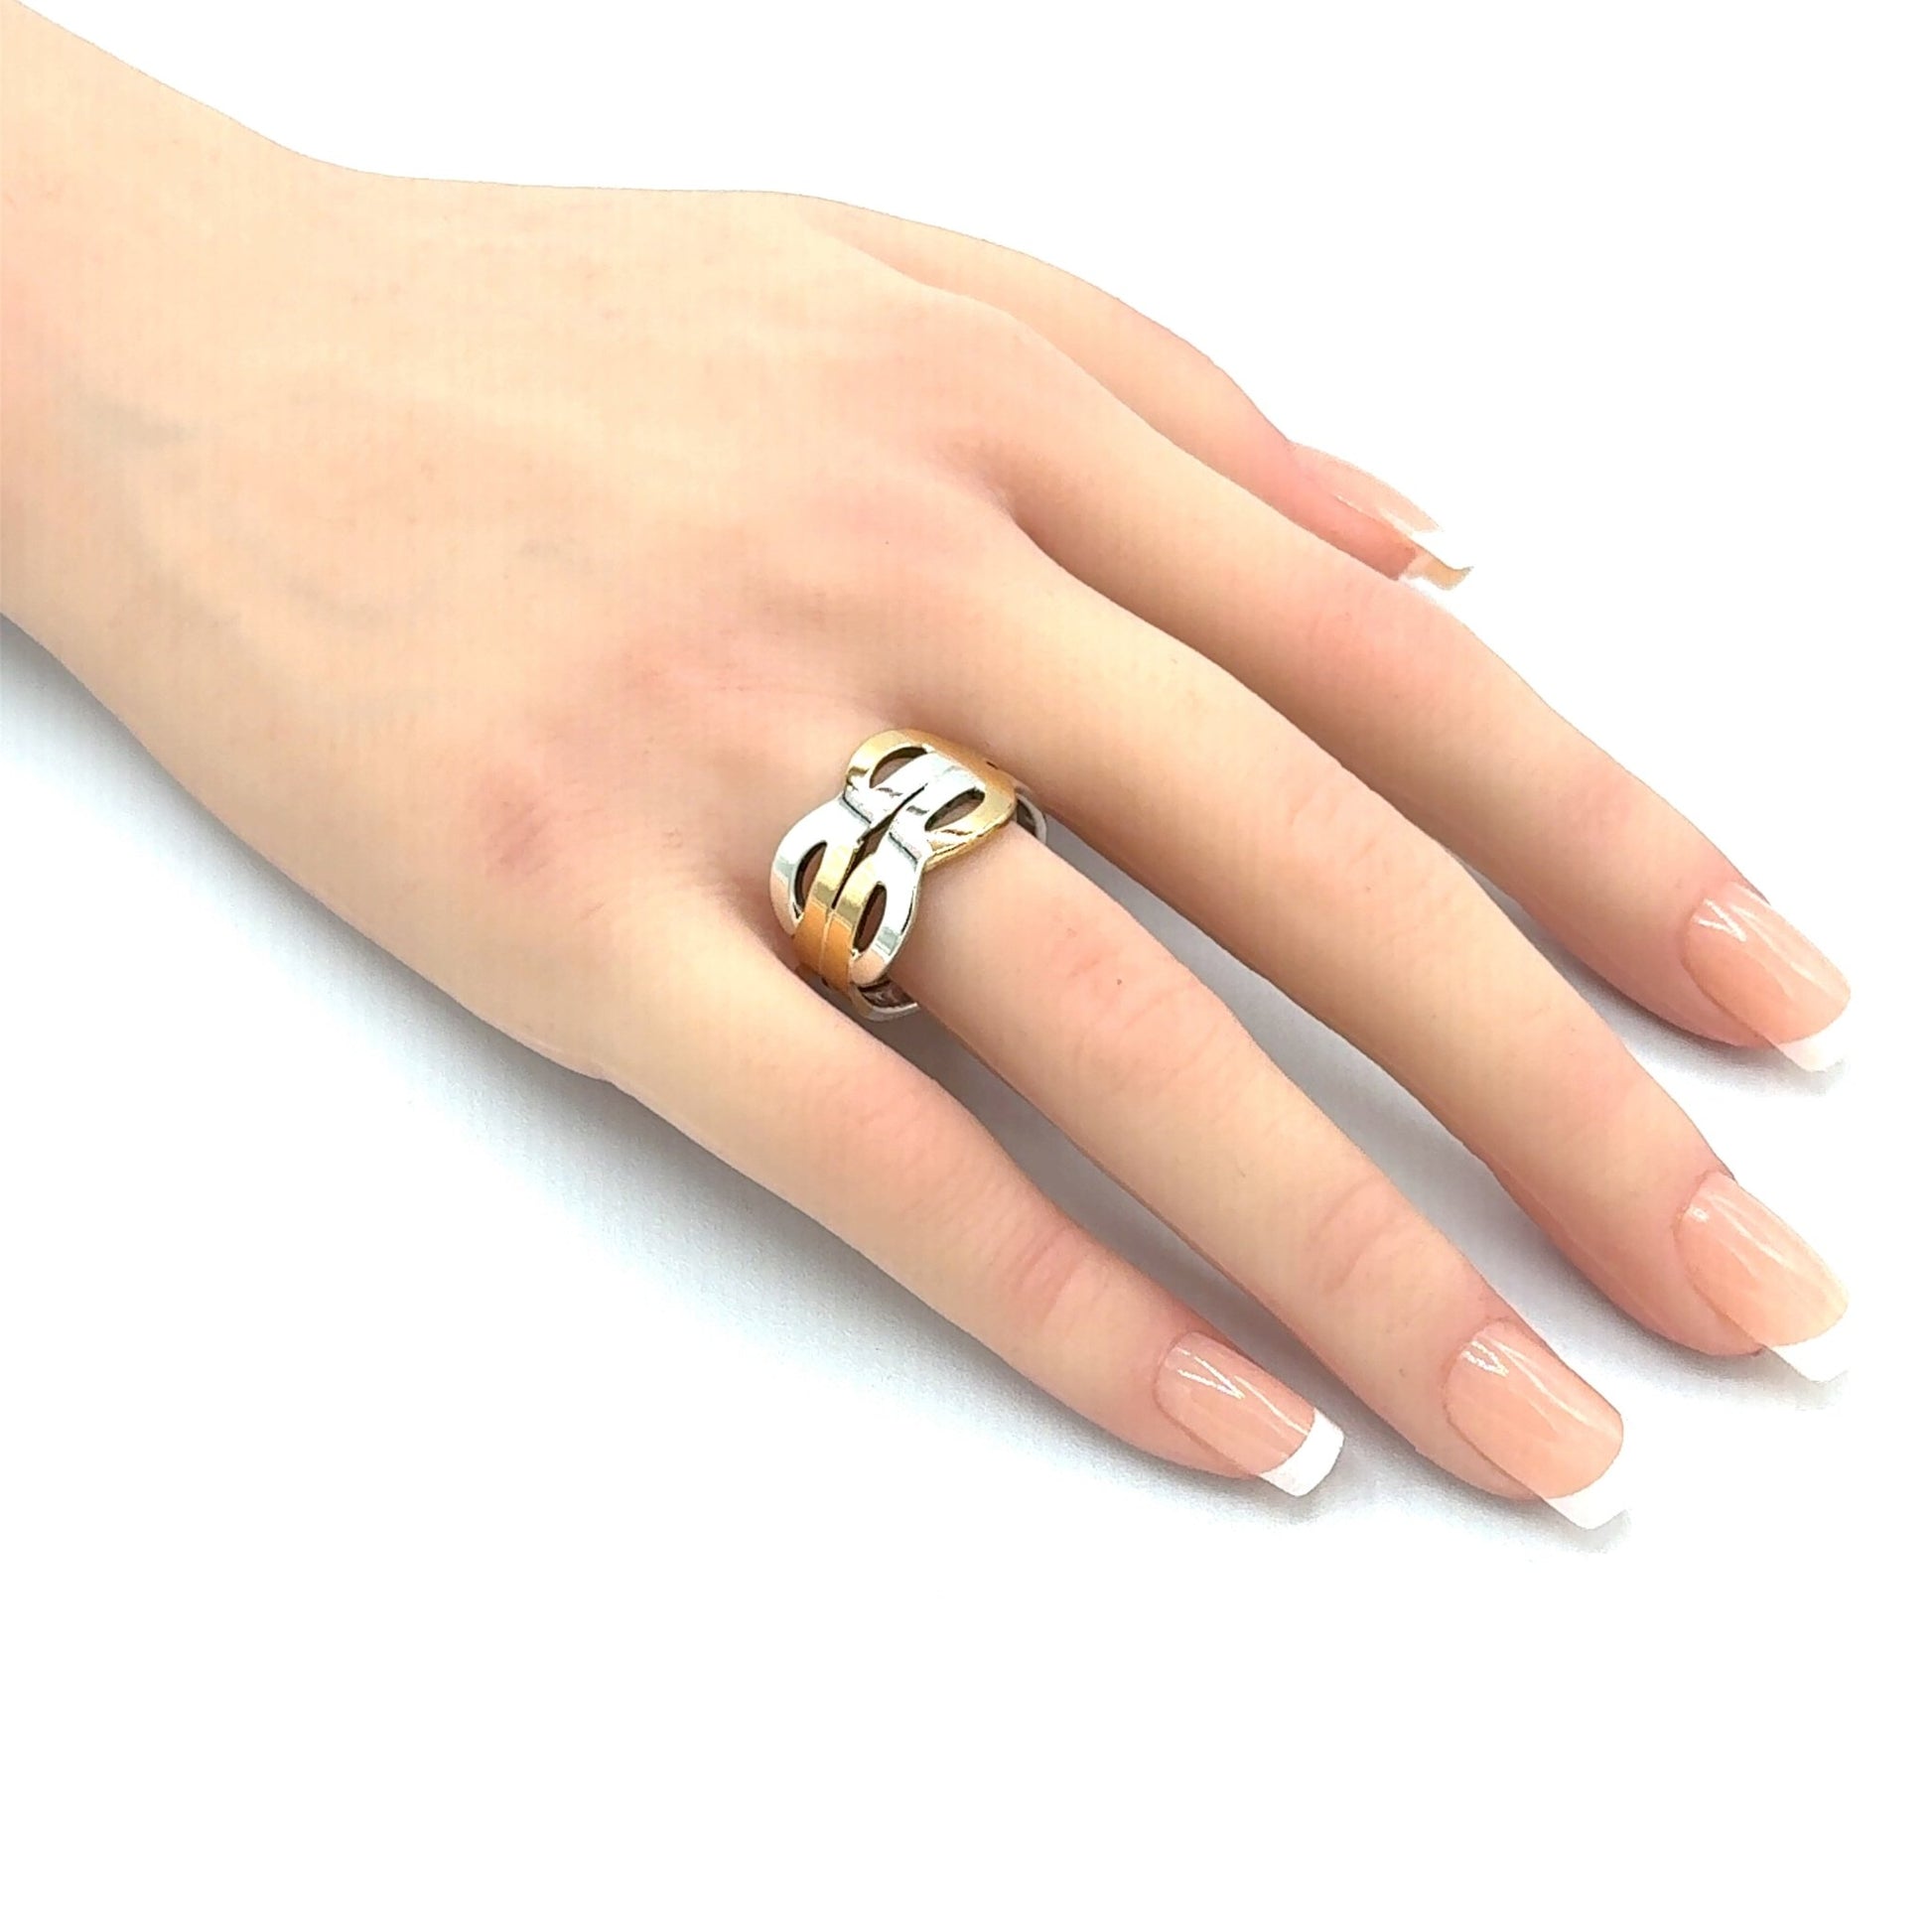 Exklusiver Unikat-Ring aus Gold 900 und Silber 925 - JUWEL1